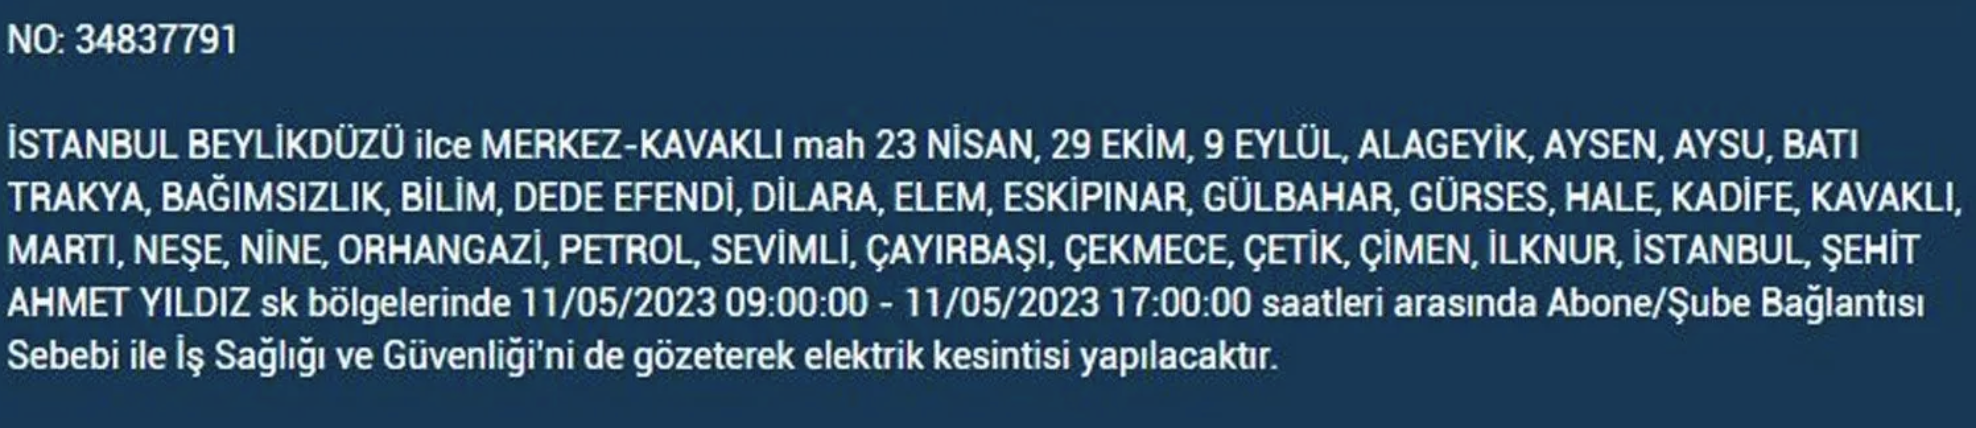 BEDAŞ, 11 Mayıs Perşembe elektrik kesintilerinin yapılacağı ilçeleri açıkladı